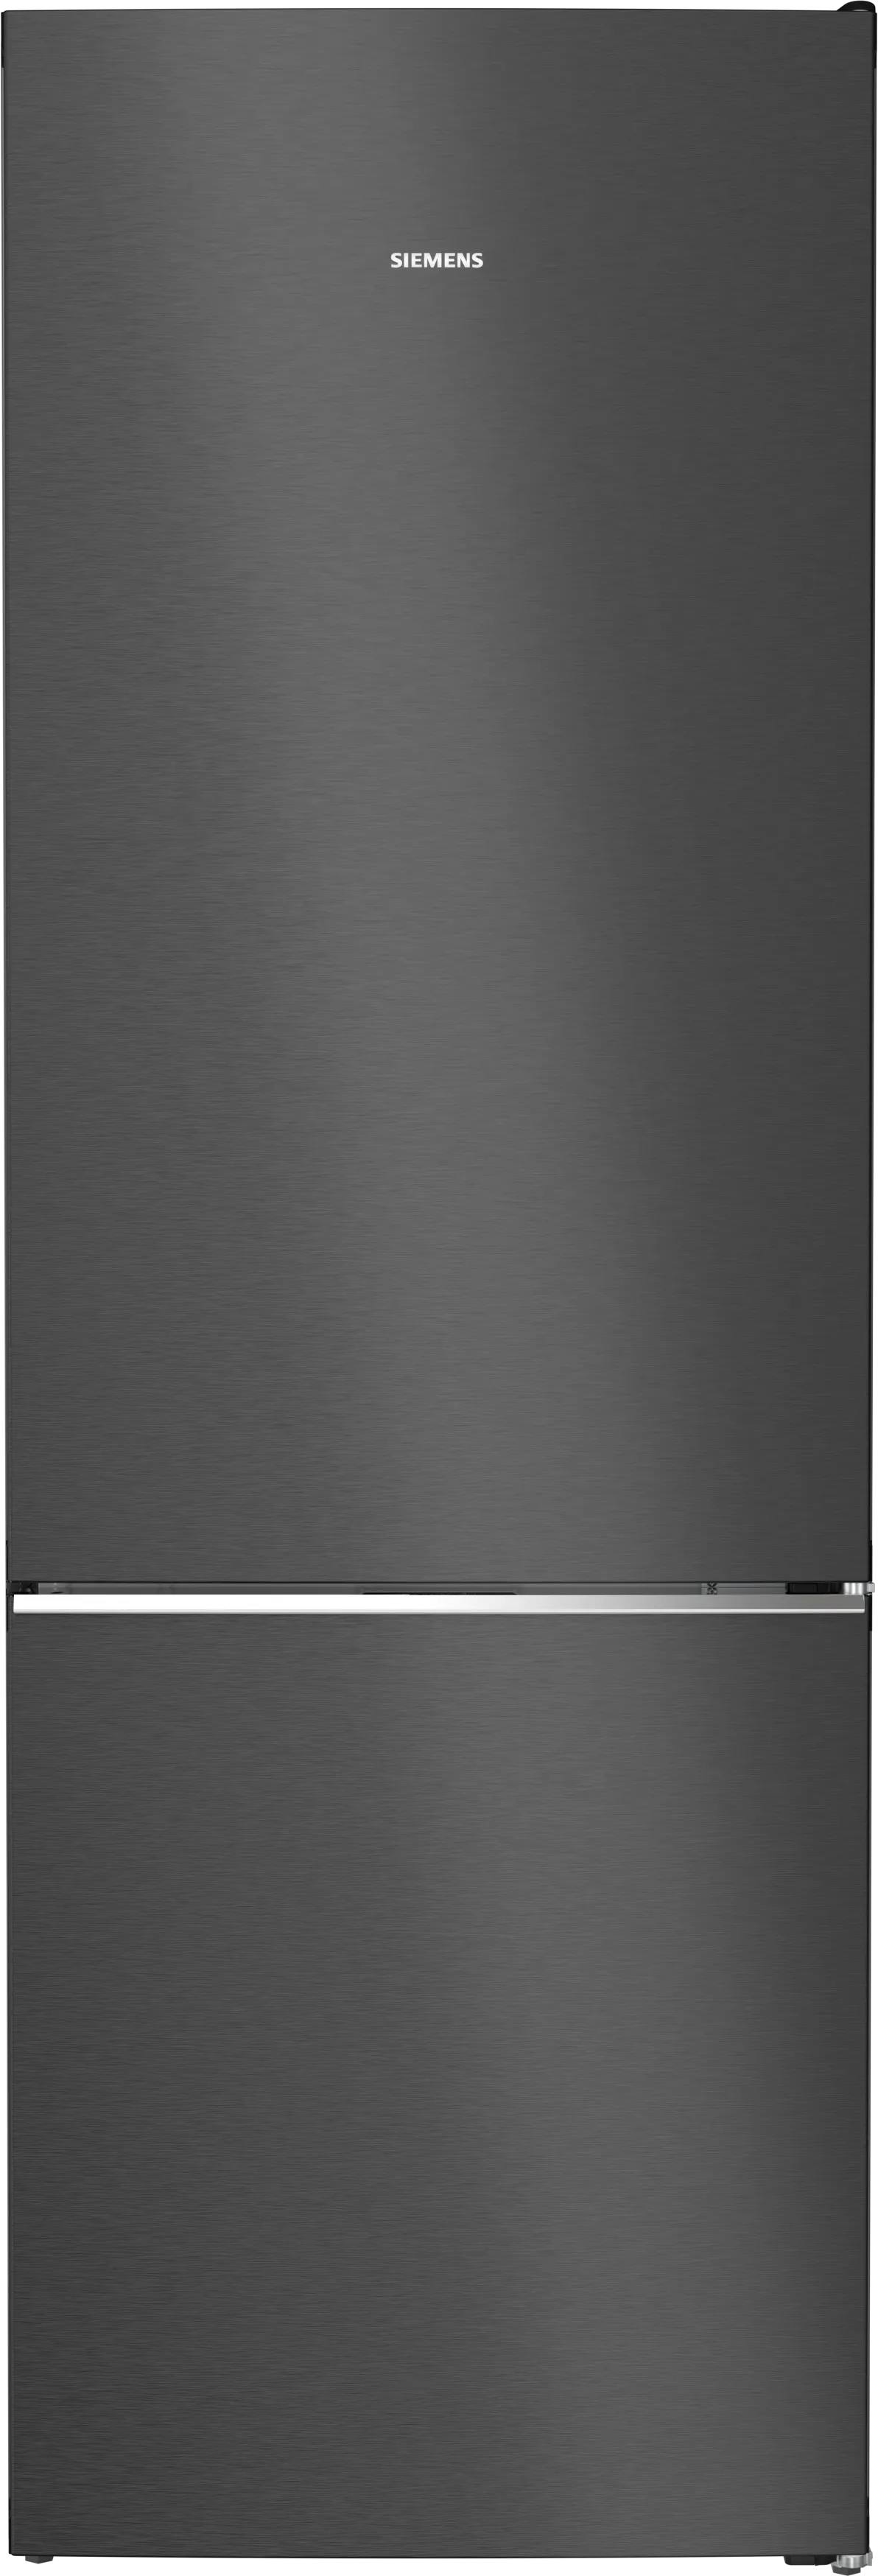 iQ700 Freistehende Kühl-Gefrier-Kombination mit Gefrierbereich unten, Glastür 203 x 70 cm Schwarz 